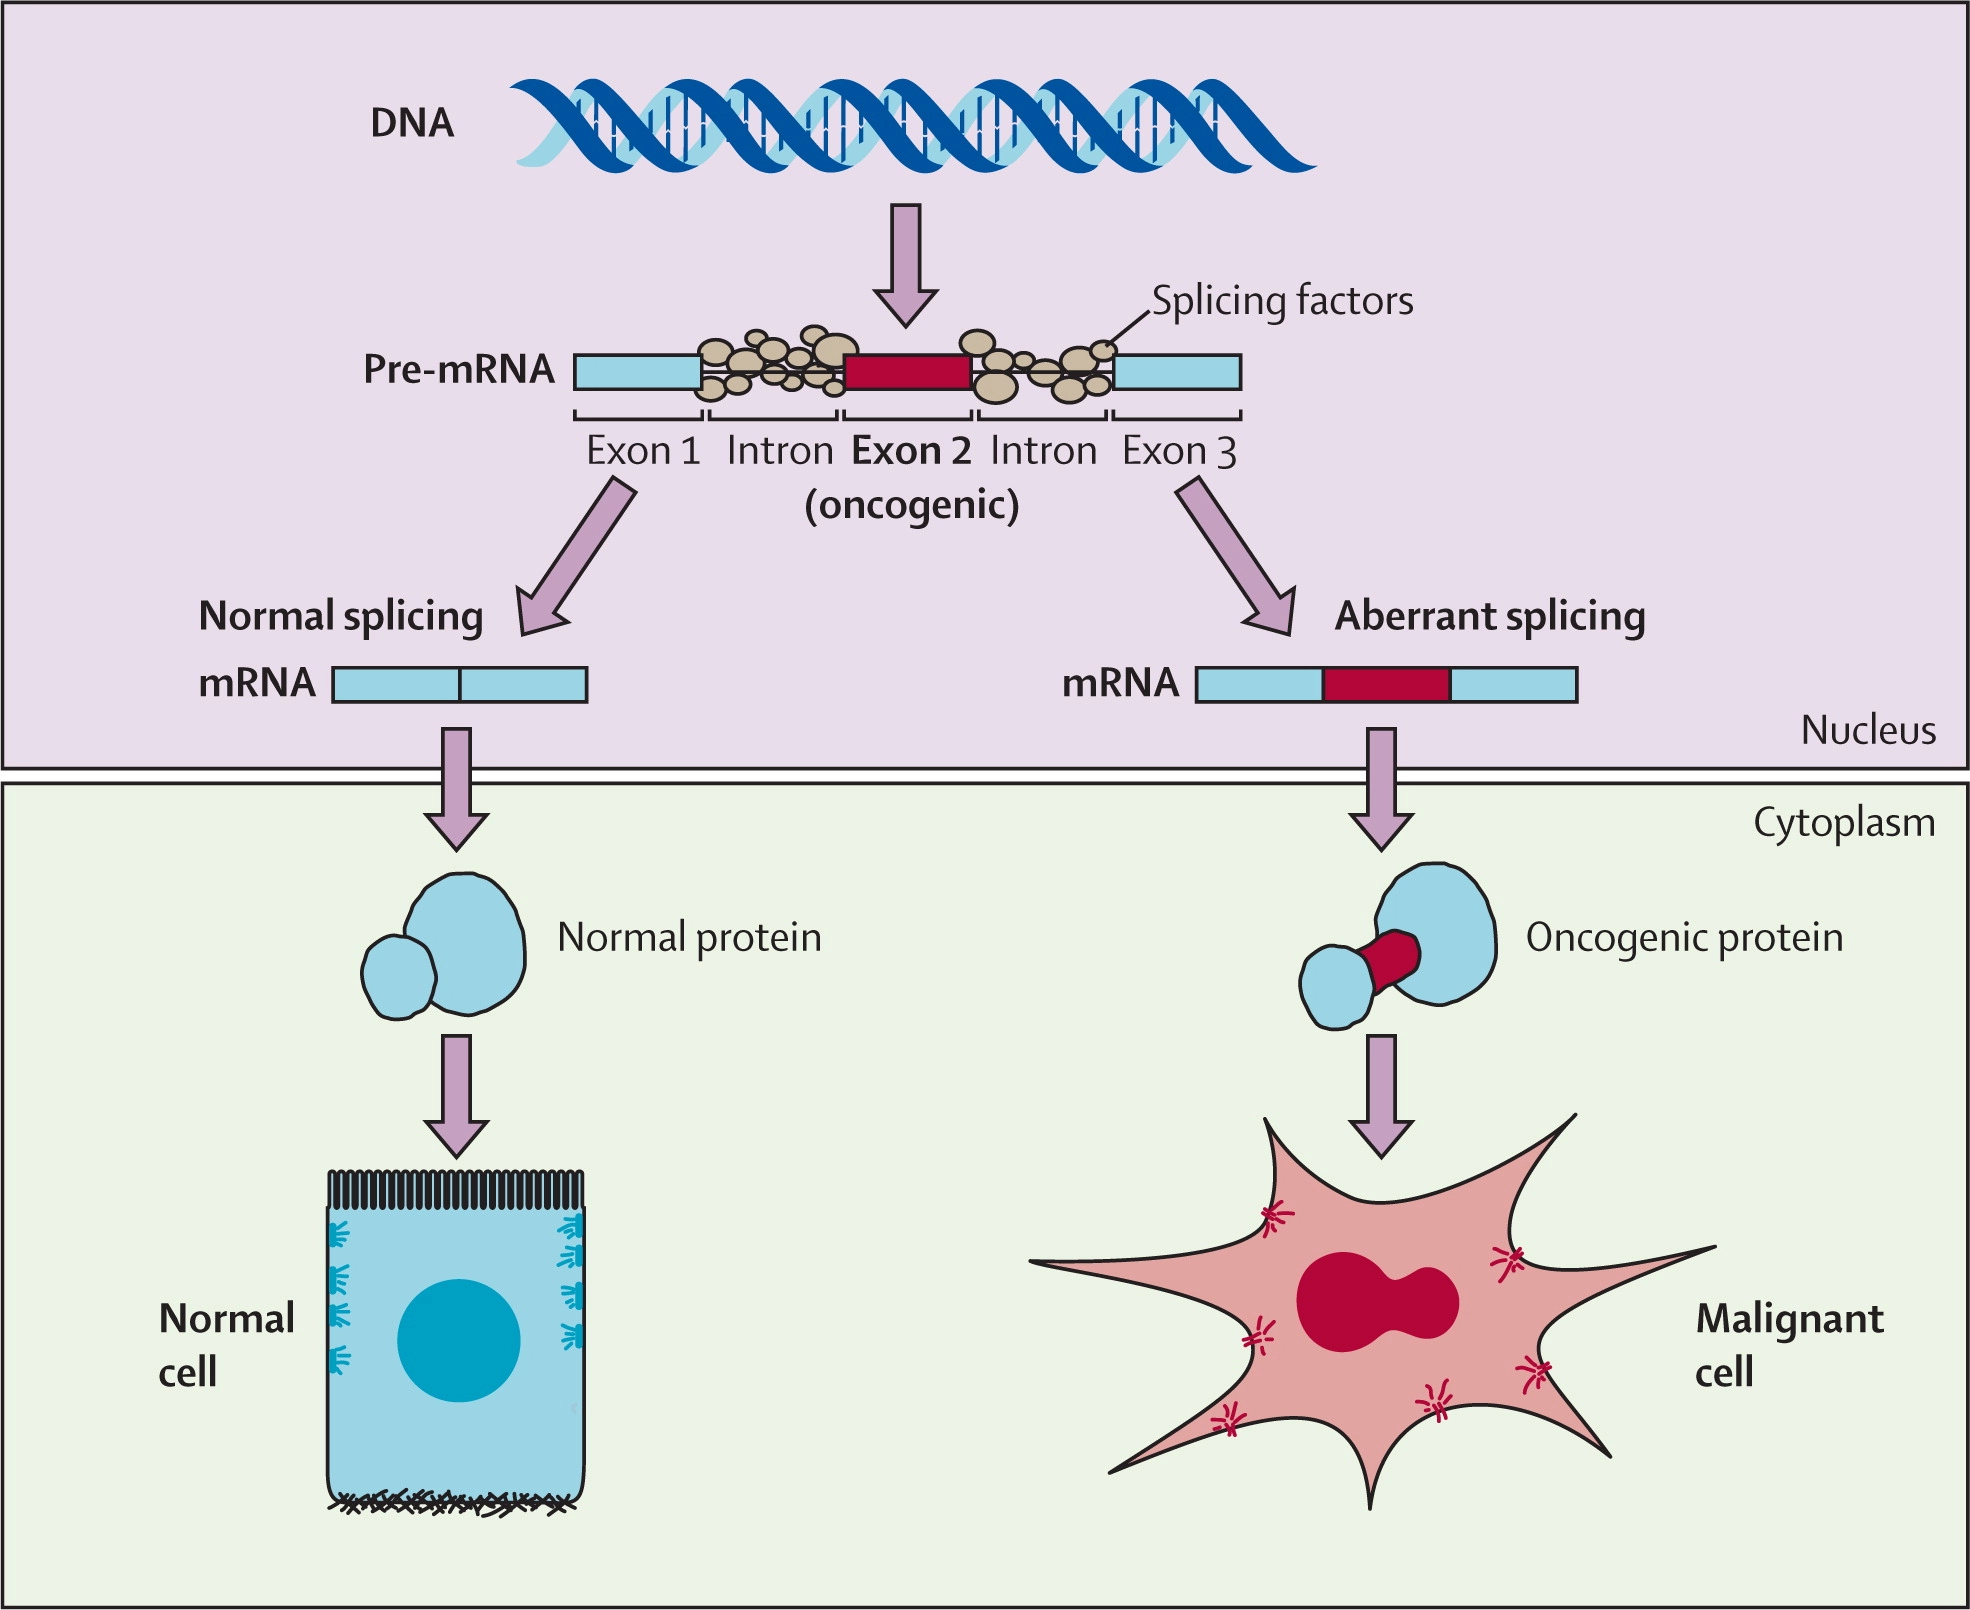 mRNA Splicing. Source: https://www.thelancet.com/cms/attachment/4dc4ebd6-928c-461e-8d88-77670862487a/gr2_lrg.jpg